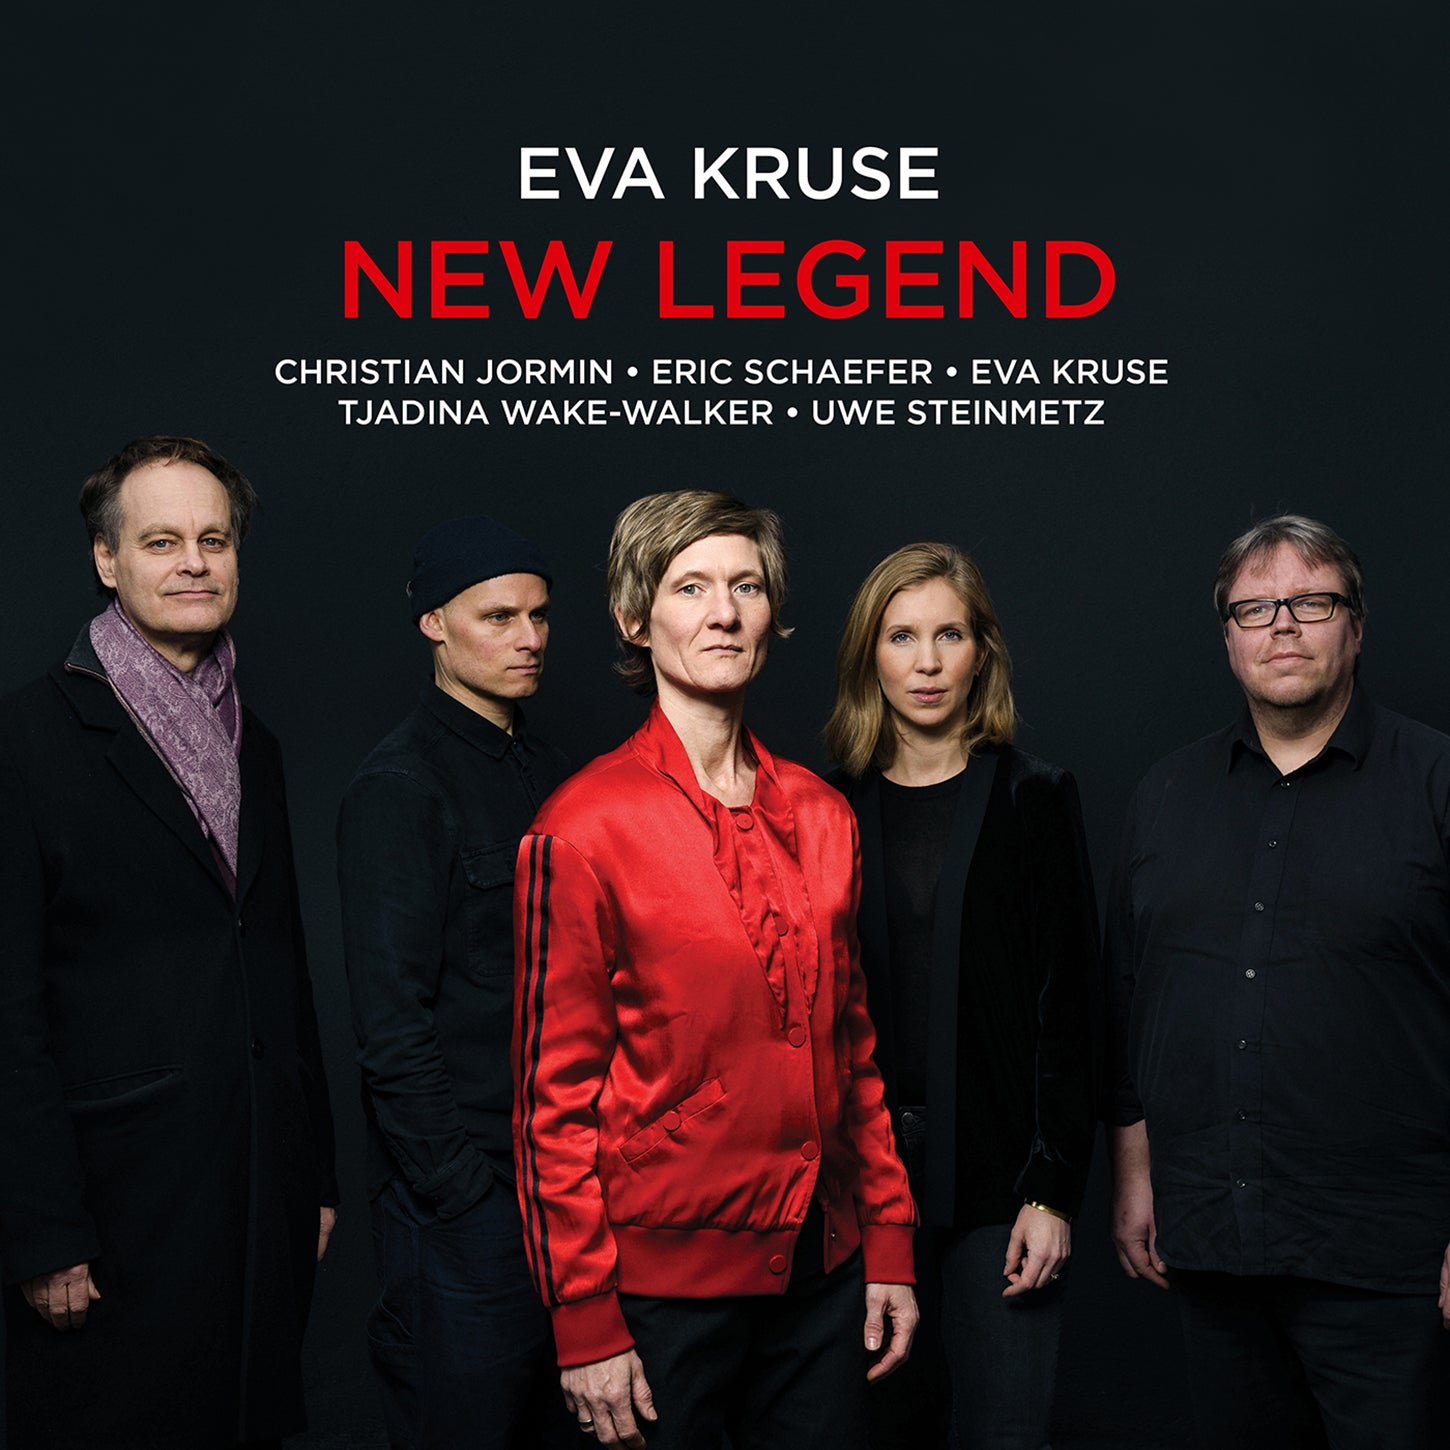 New Legend / Eva Kruse